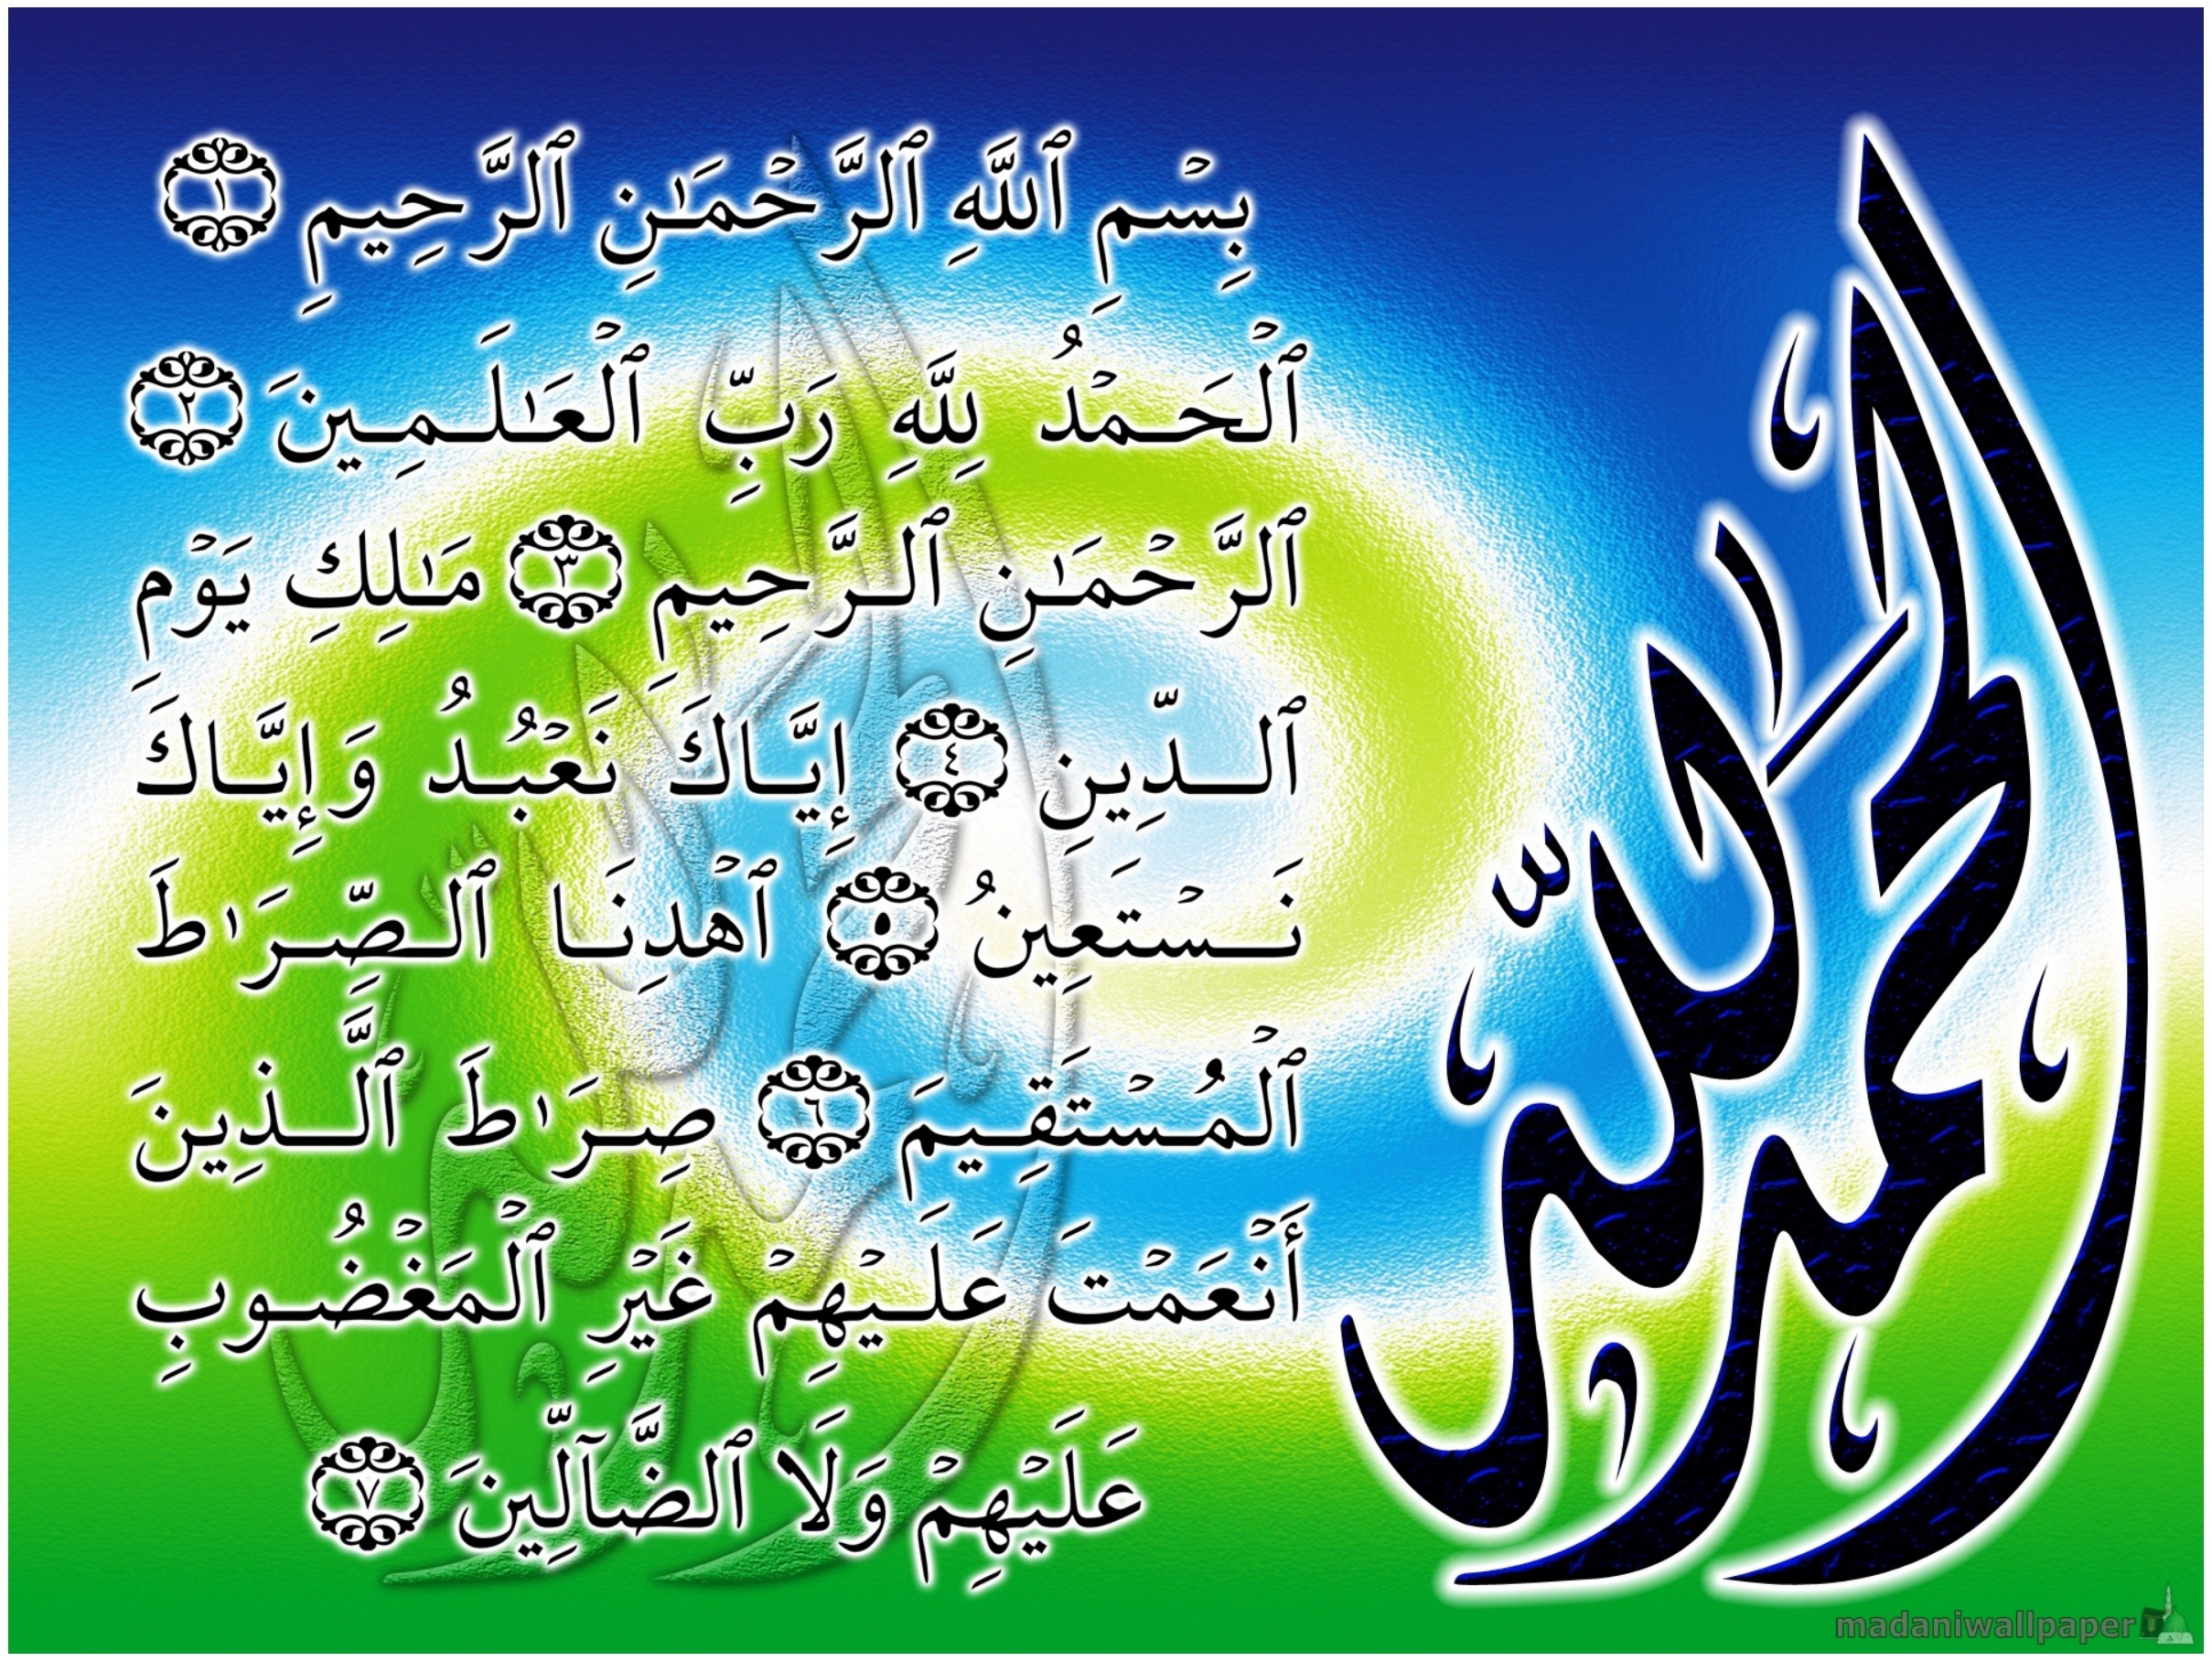 Quran Wallpaper 2560x1440 4k Hd 2 Quotes